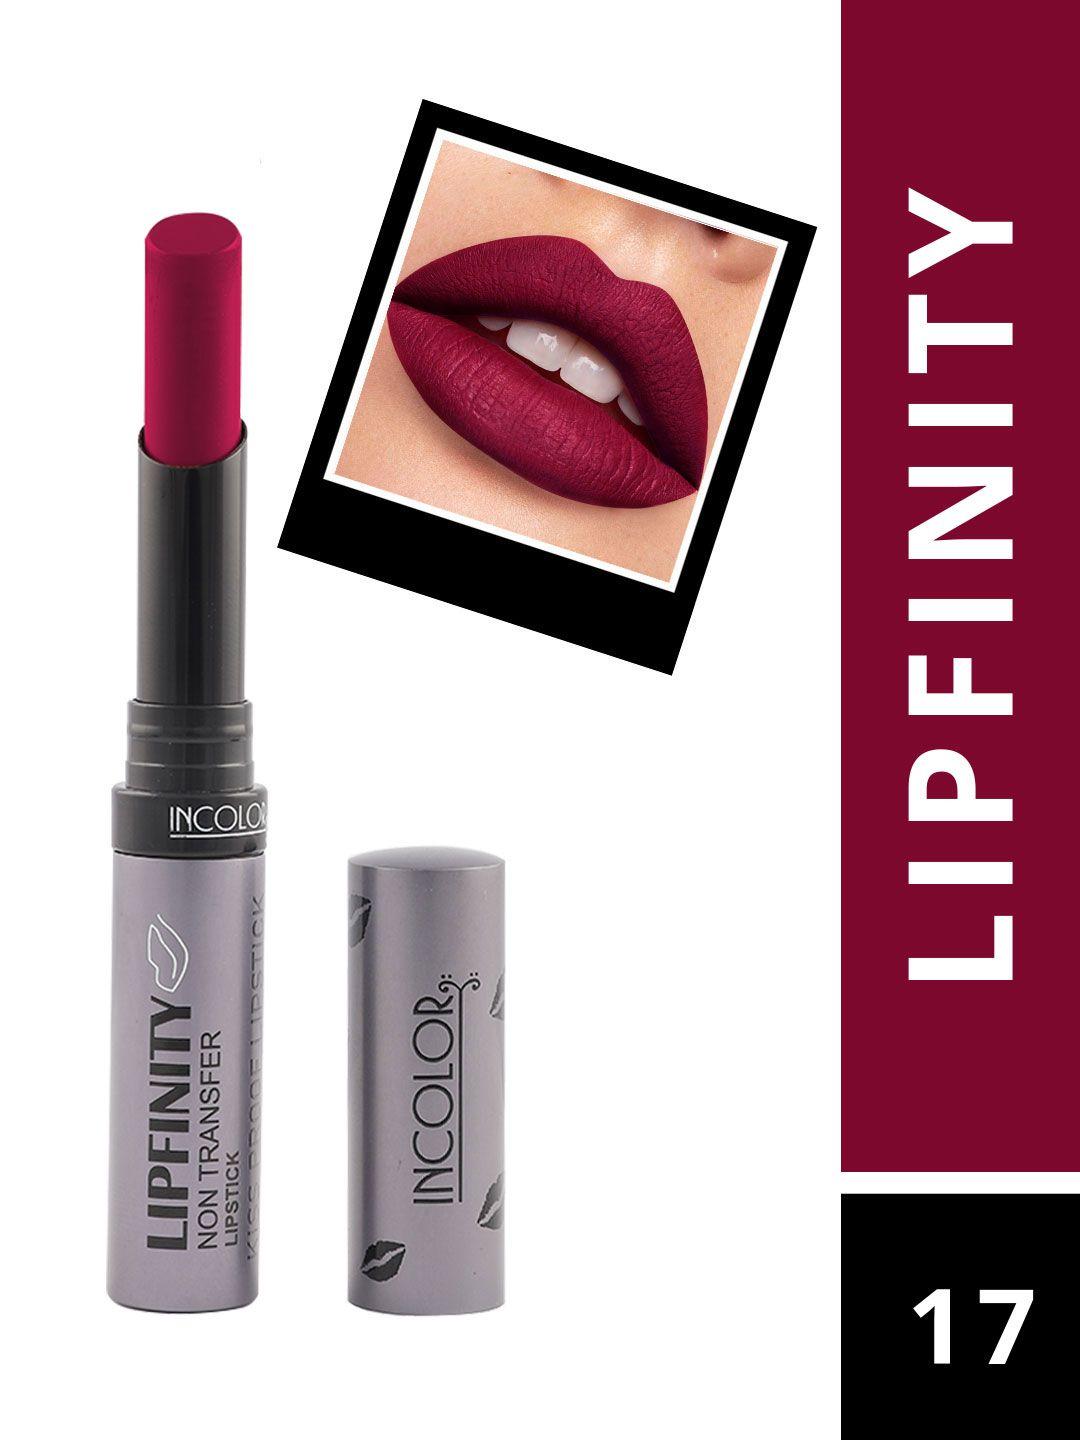 incolor lipfinity lipstick - 17